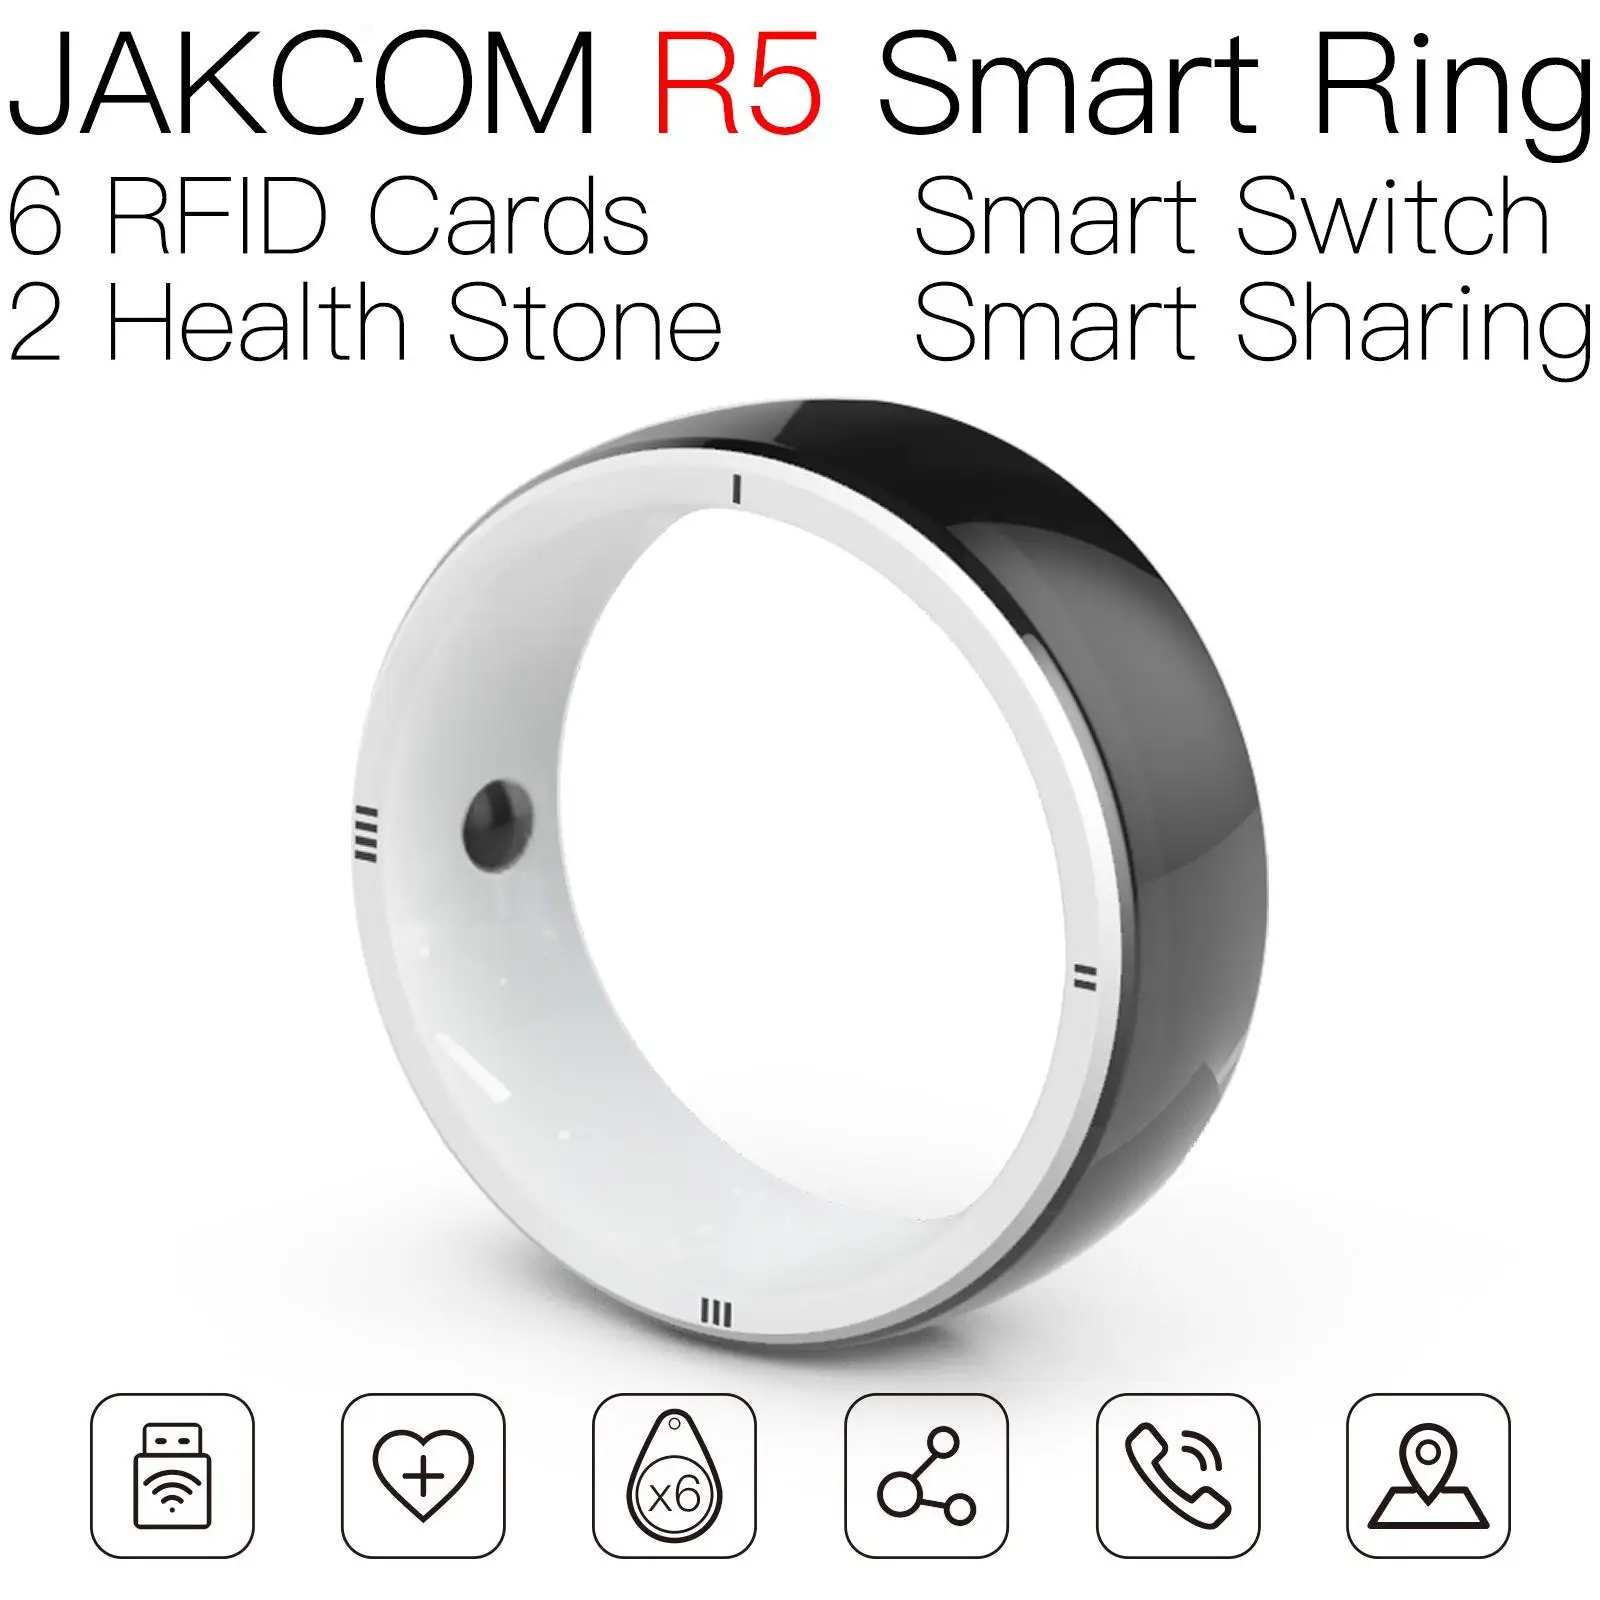 JAKCOM R5 Smart Ring соответствует tag9123 nfc215 rf id uhf считыватель wiegand ПВХ карта EMV чип rfid 125 программный плеер nfc автомобильный штендер